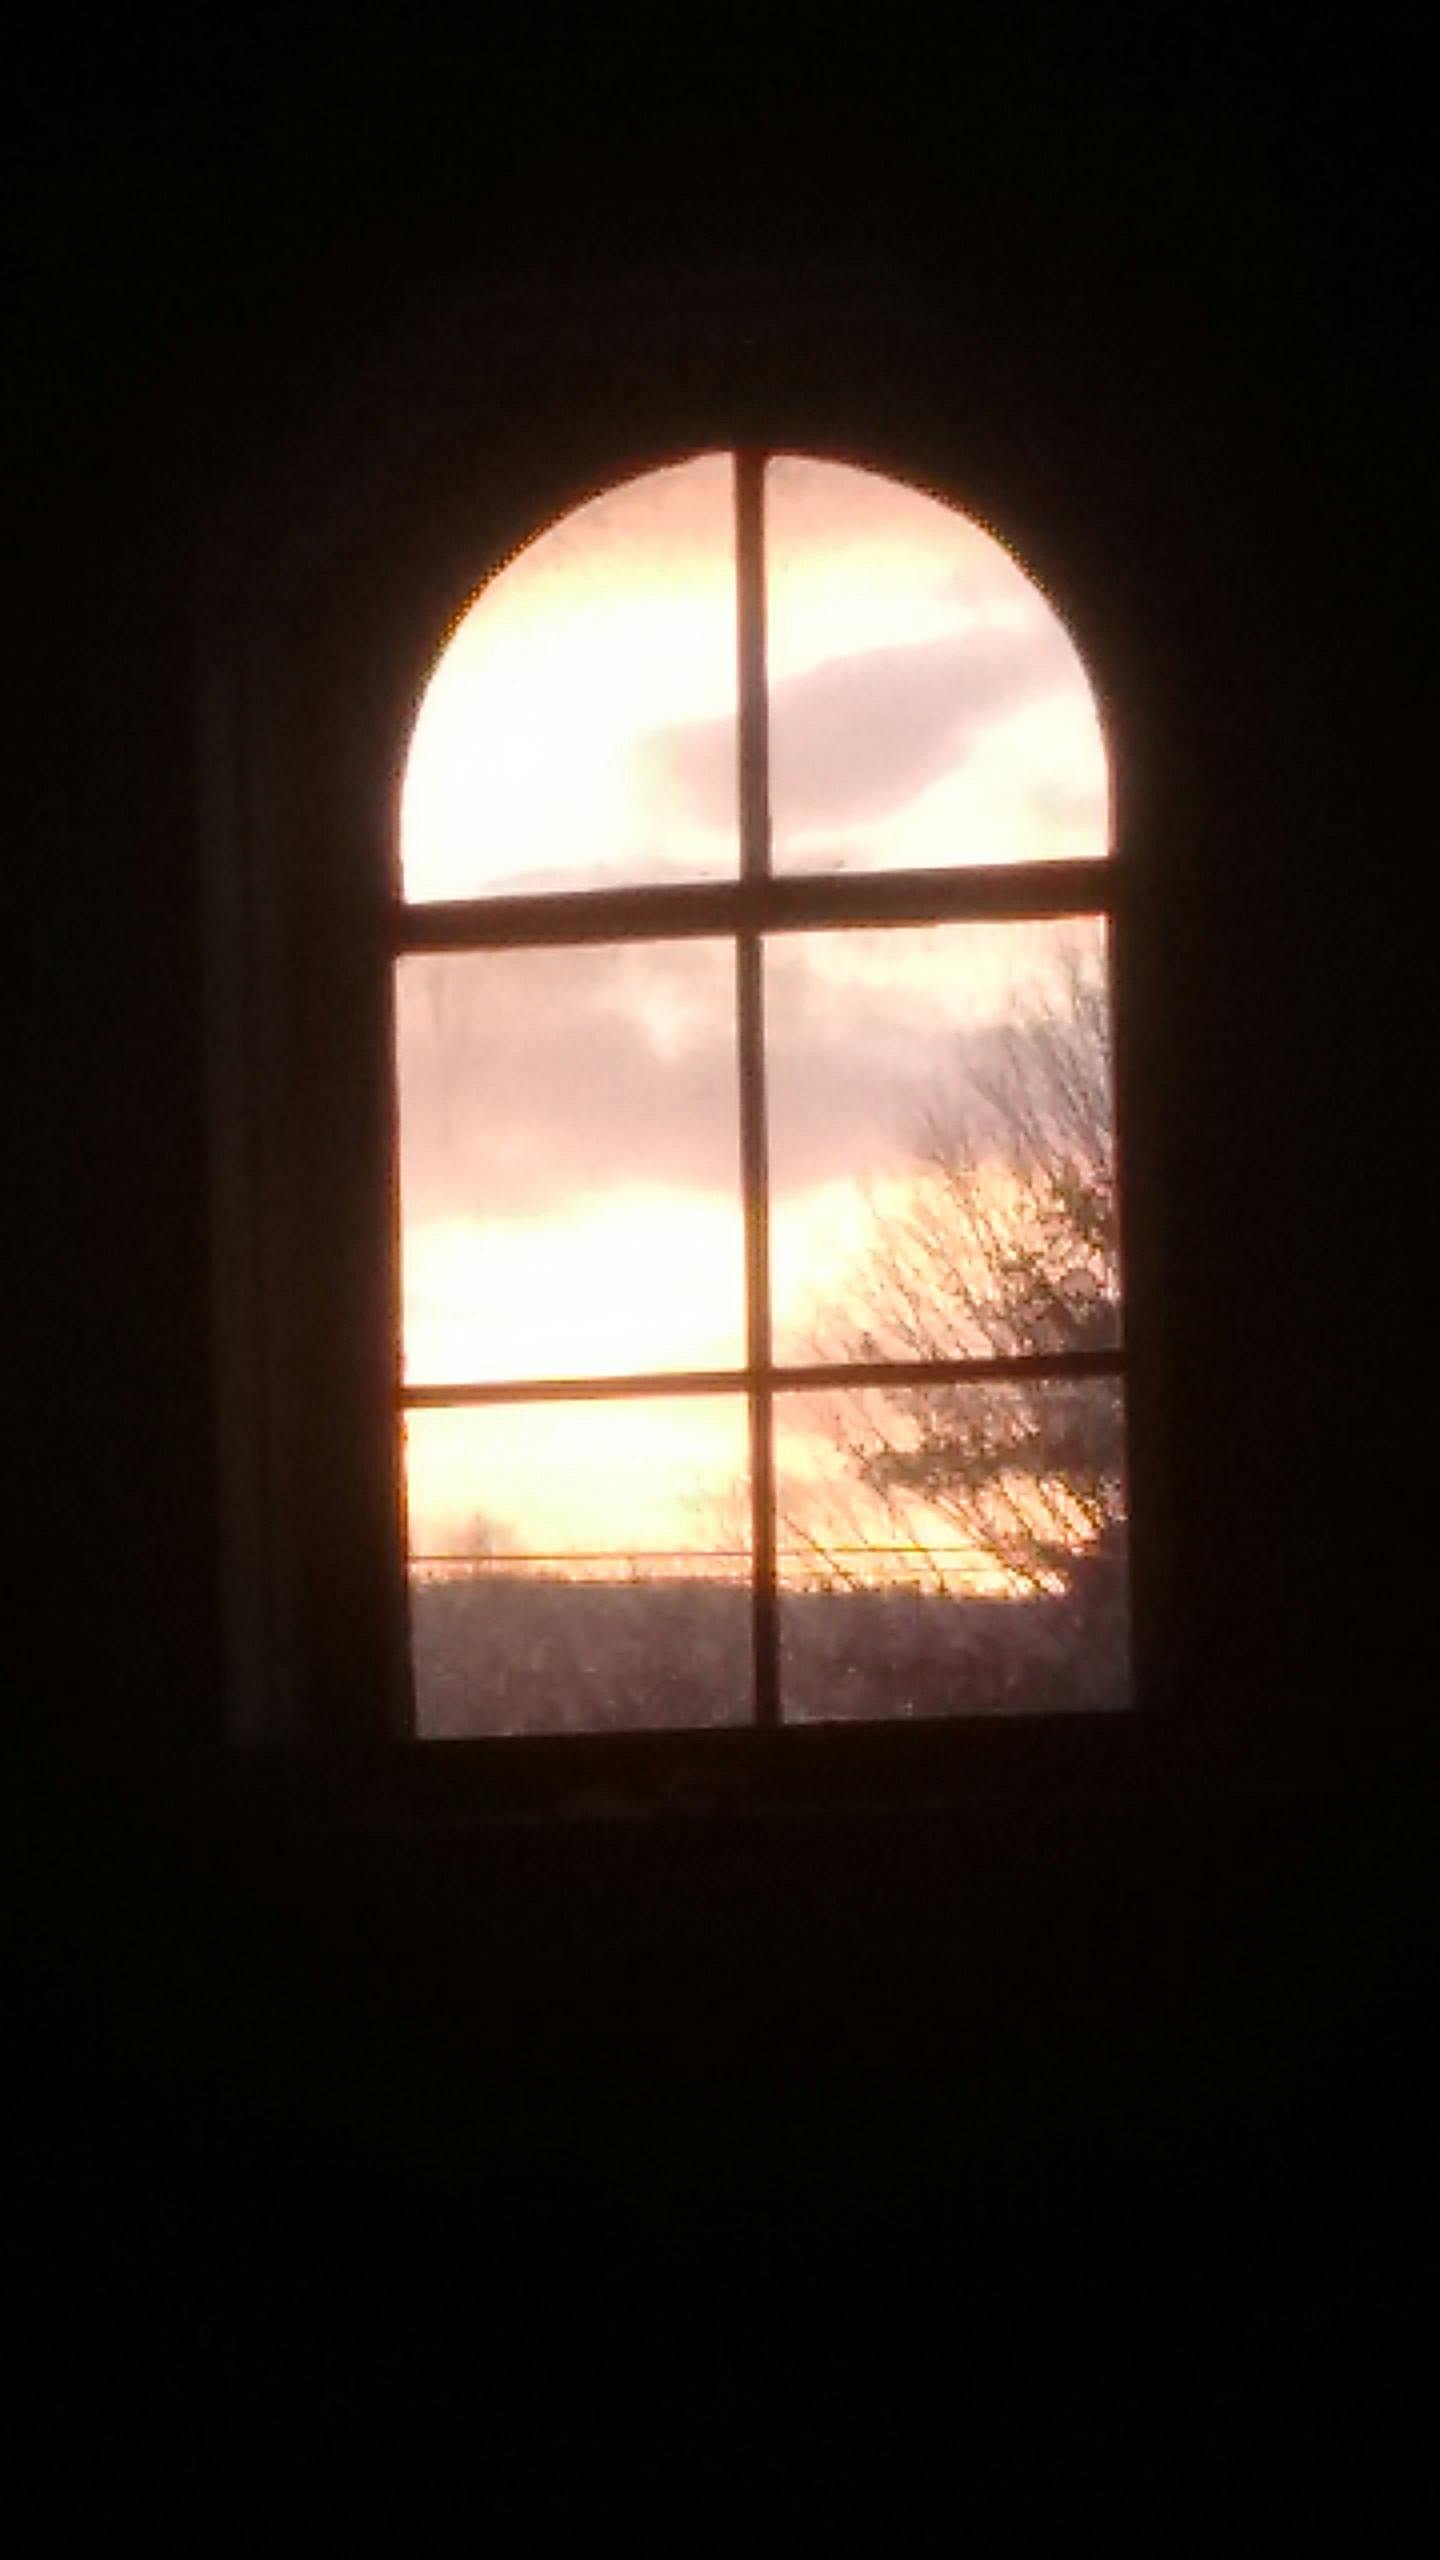 Free stock photo of barn window, golden sunset, sunset